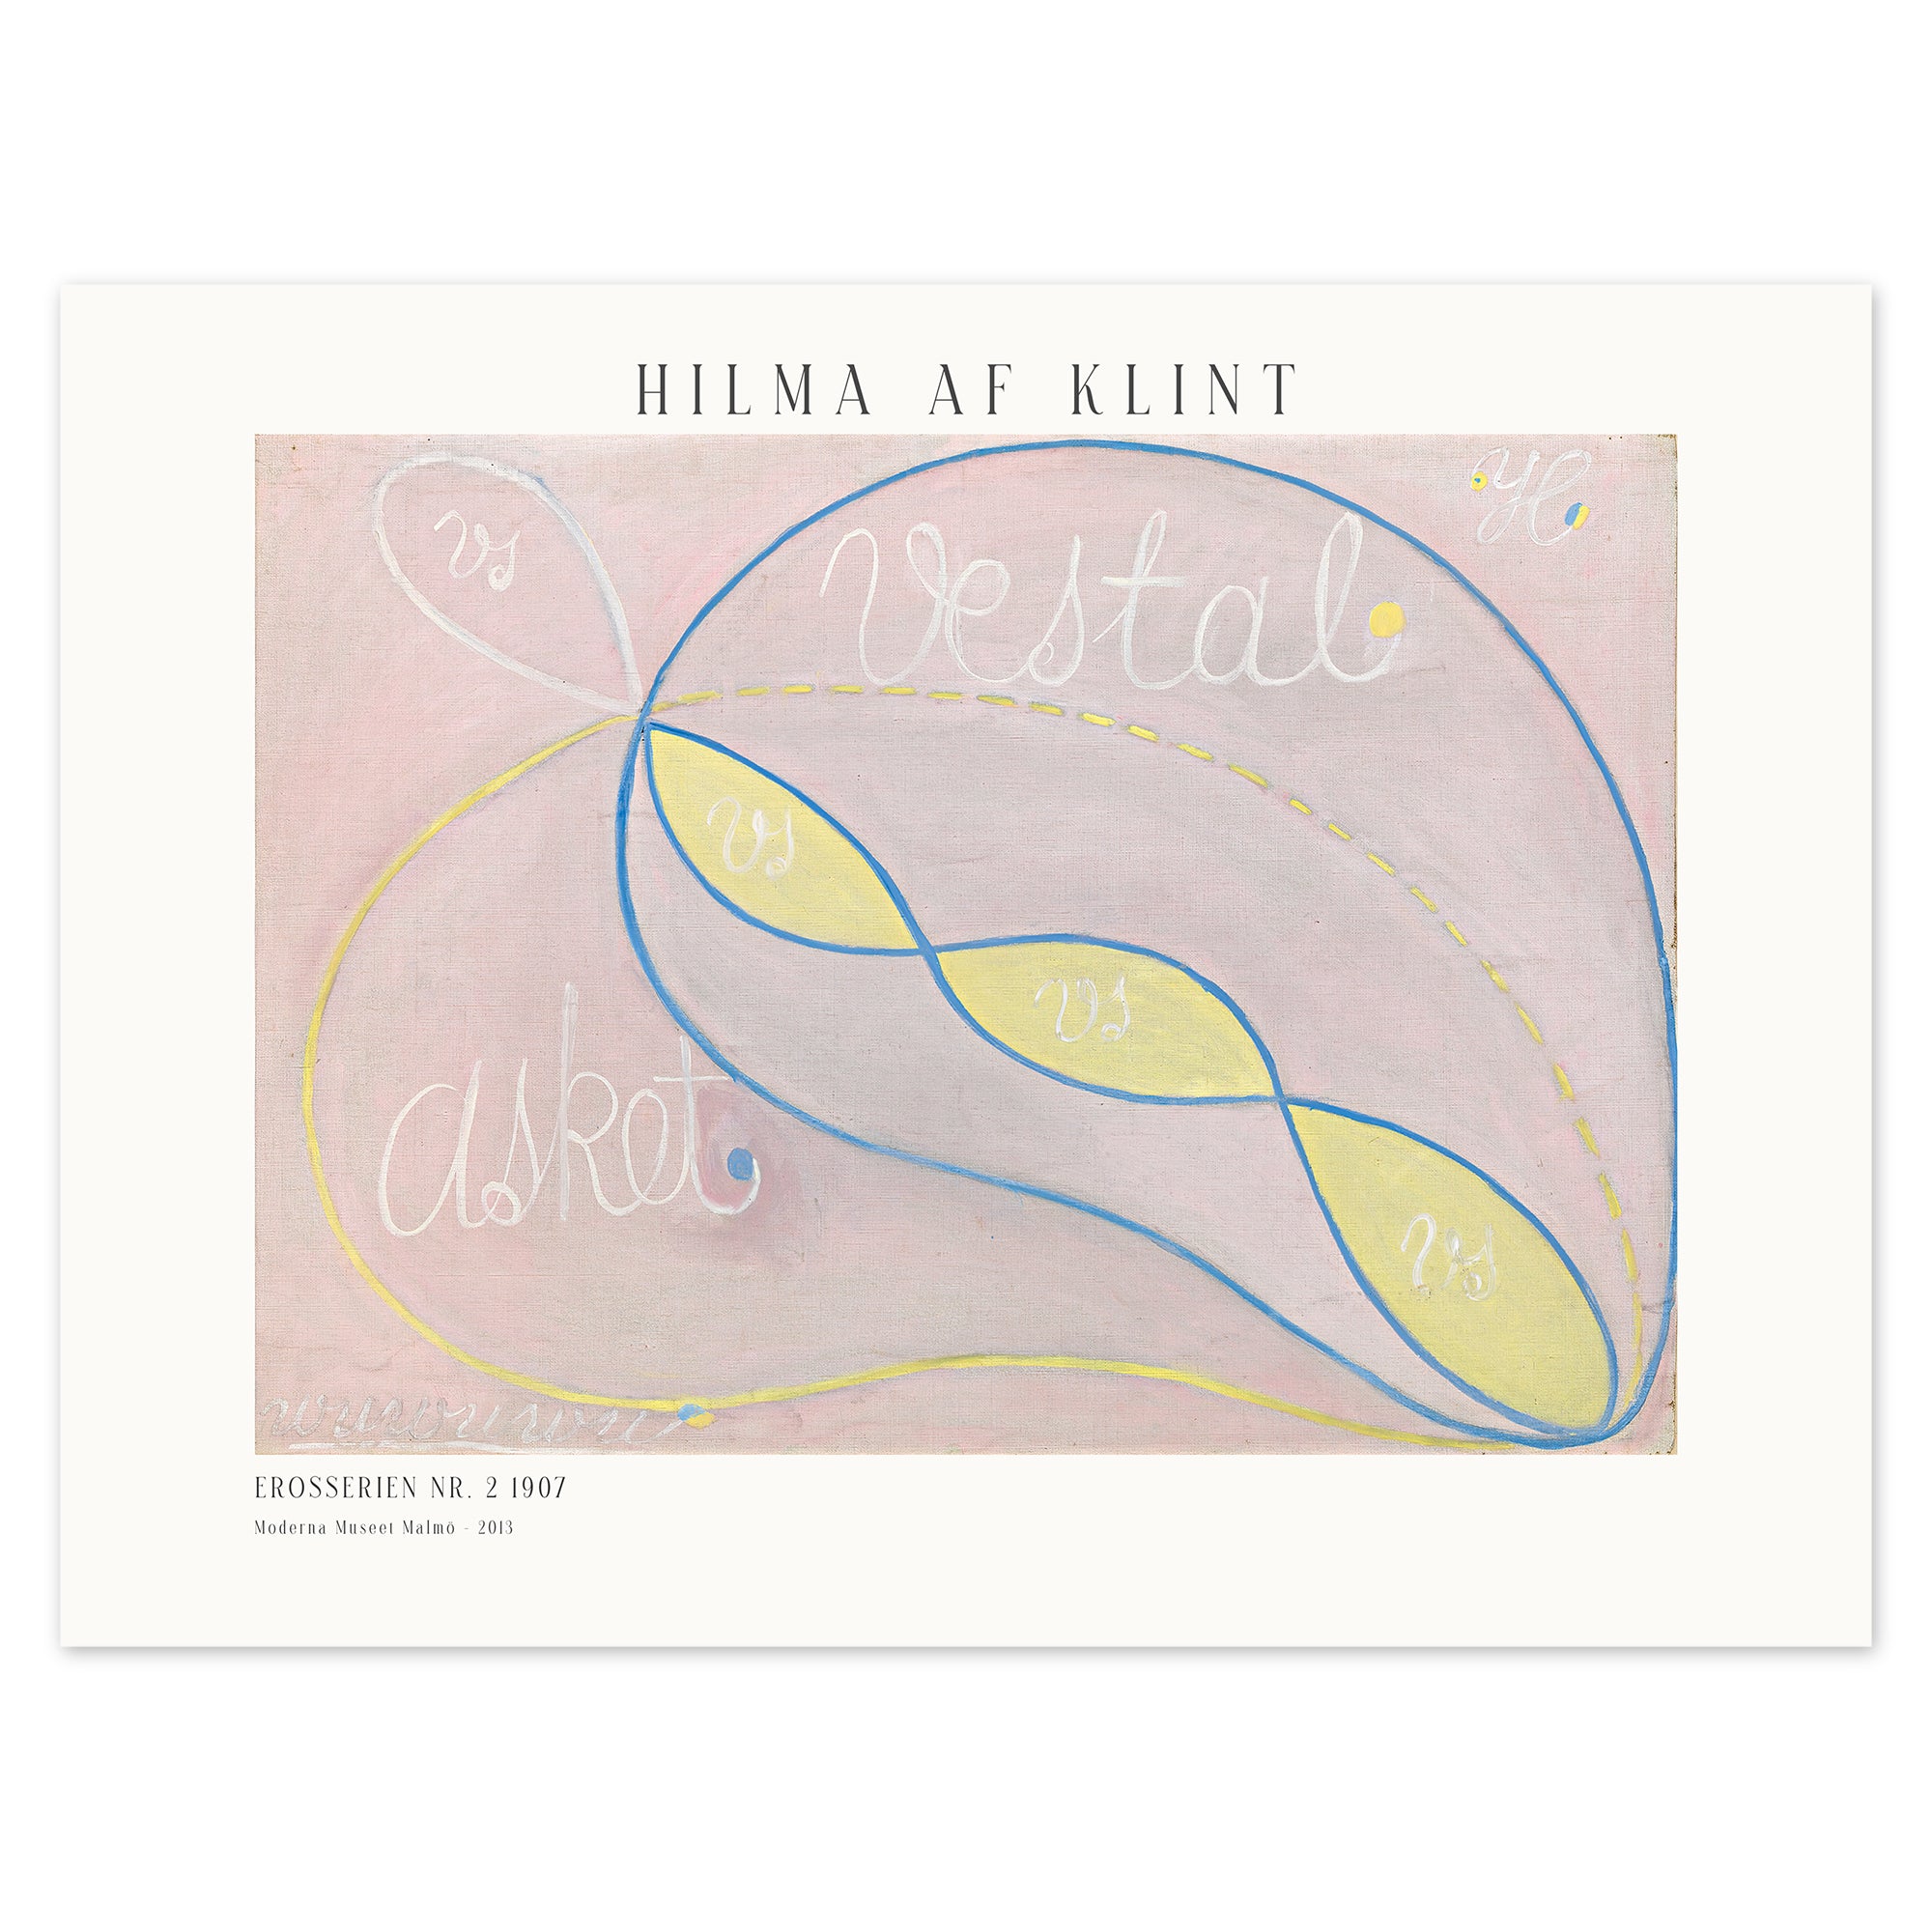 Hilma af Klint Poster - Erosserien nr. 2